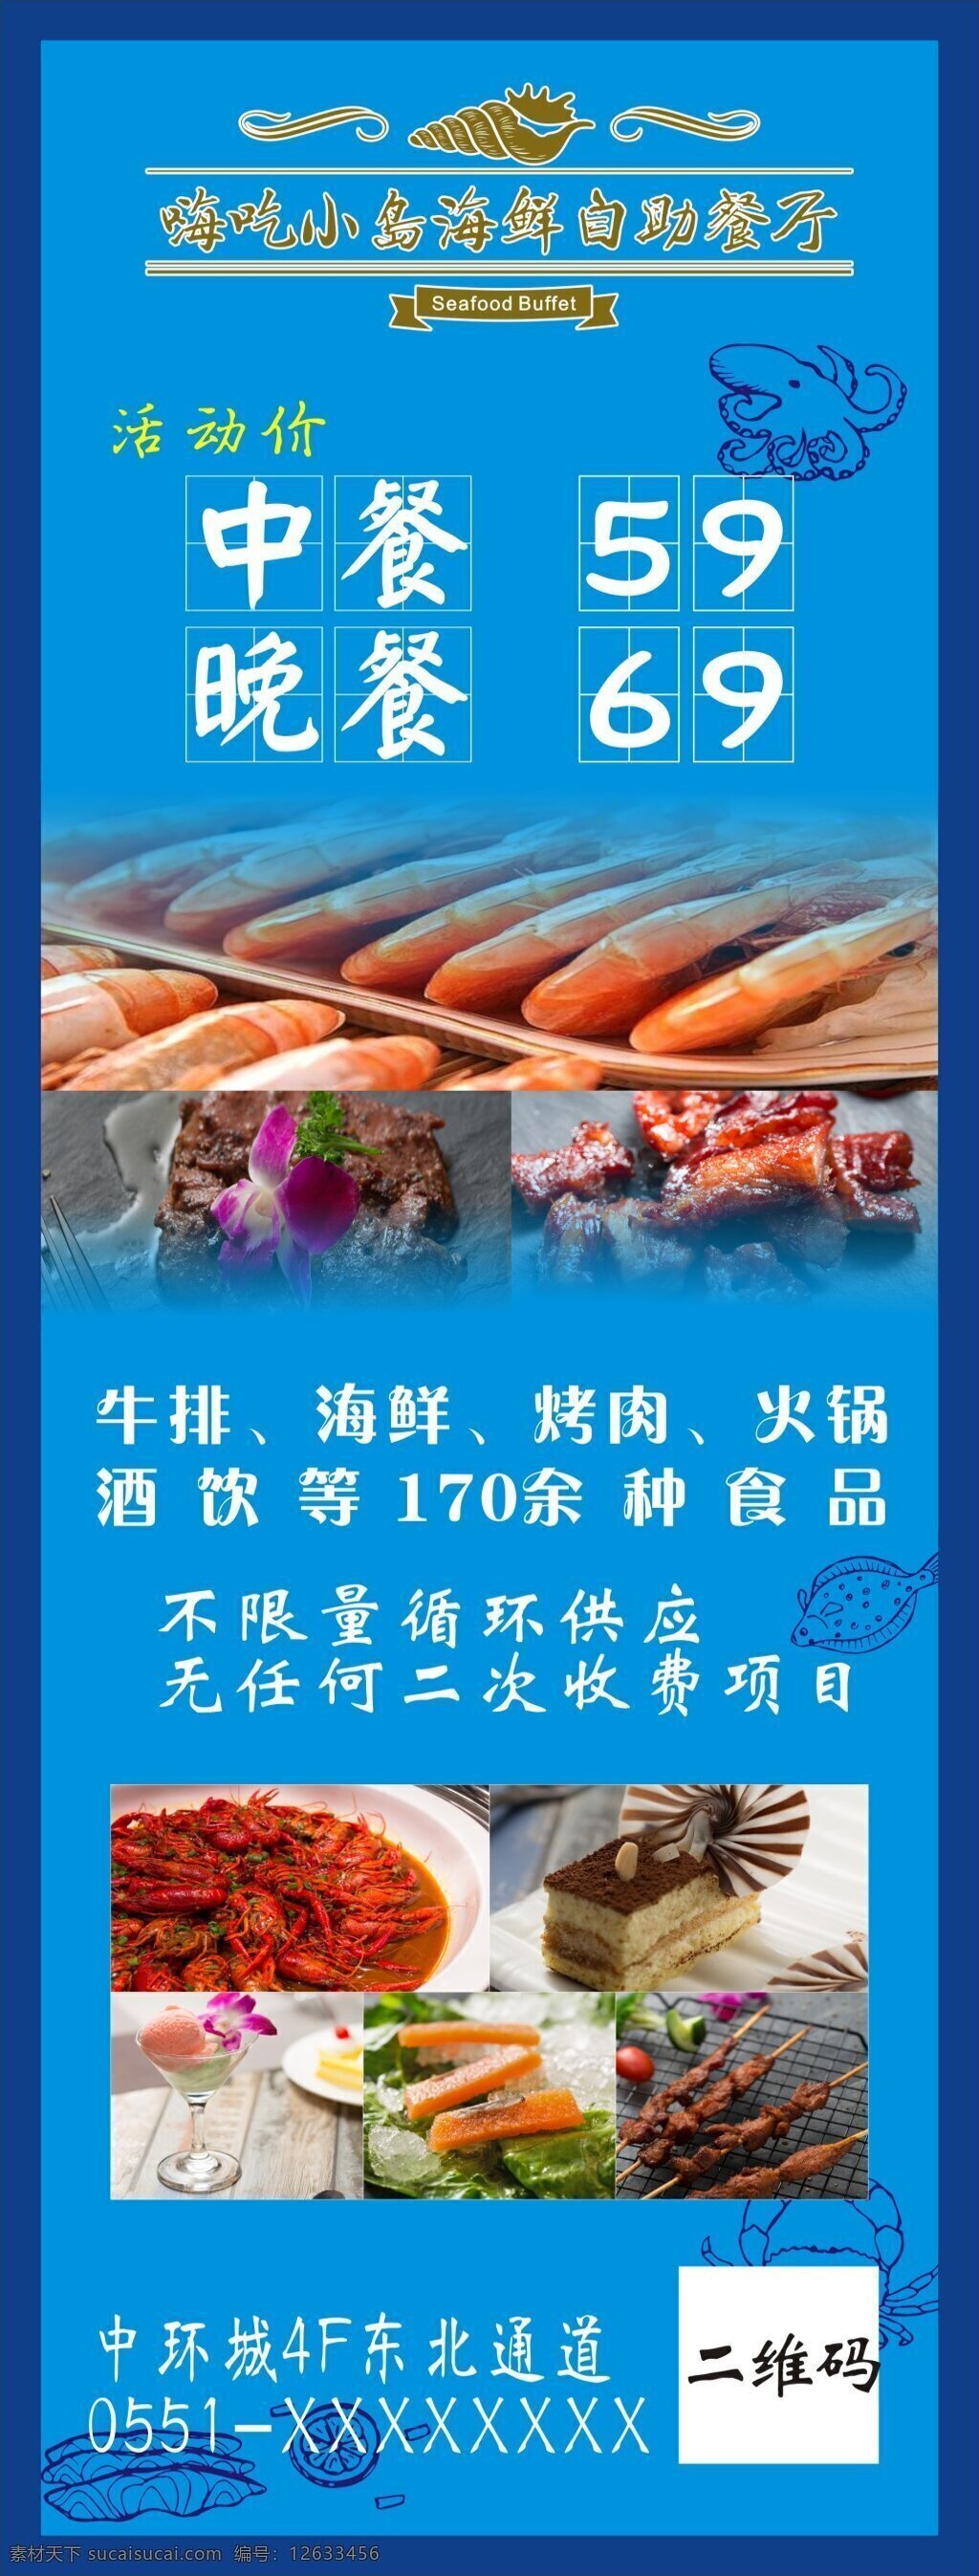 海鲜 自助 烤肉 海报 虾 甜点 火锅 牛肉 展架 60160cm 餐厅 嗨吃小岛 蓝色 深蓝